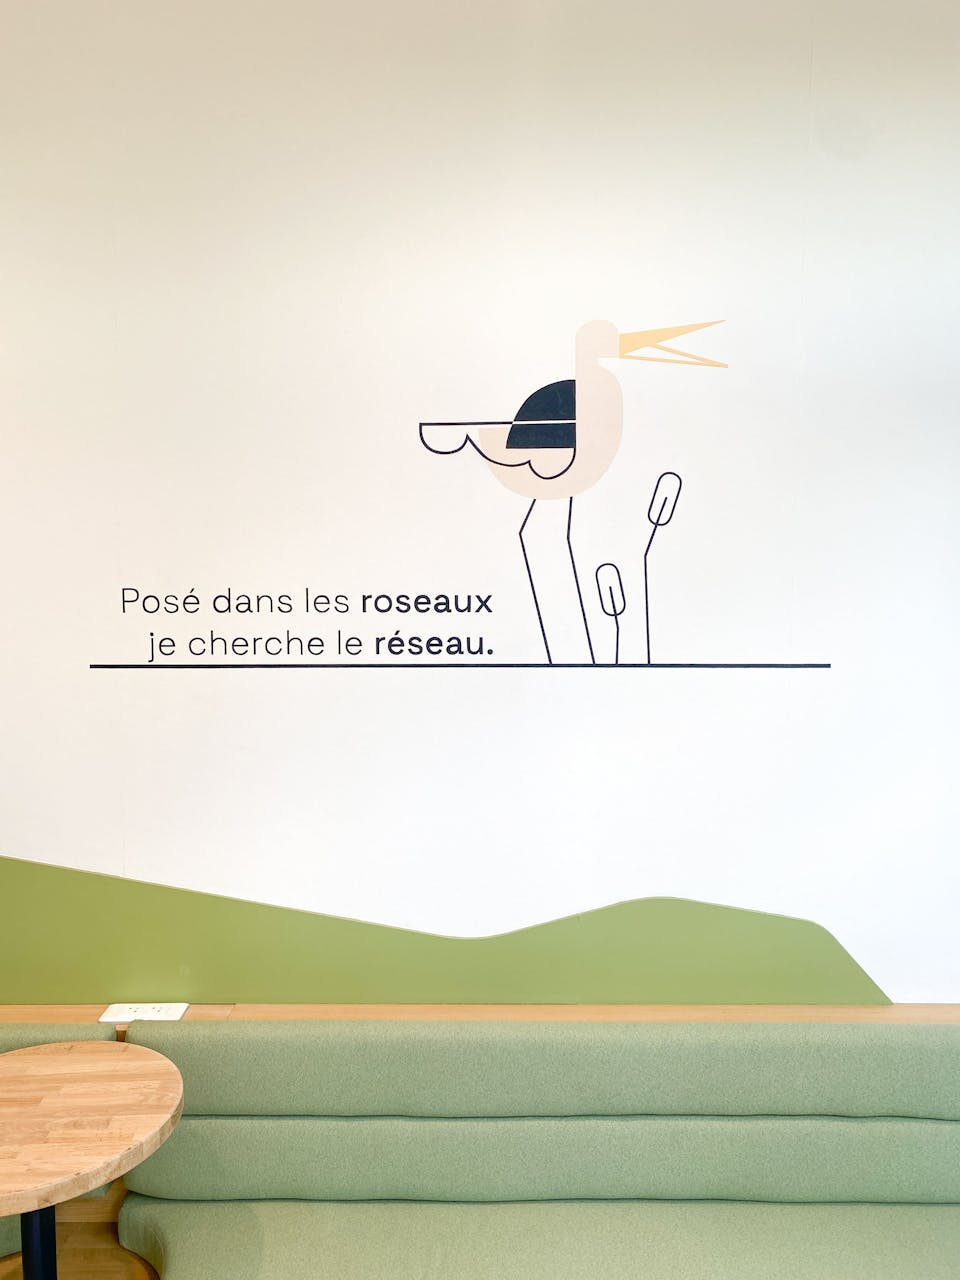 Une illustration filaire représentant un héron dans un marais, apposée par sticker dans le cadre de l'aménagement de la Maison de l'Entreprise à Saint-Nazaire par l'agence de design Studio Katra. On peut y lire "posé dans les roseaux, je cherche le réseau".